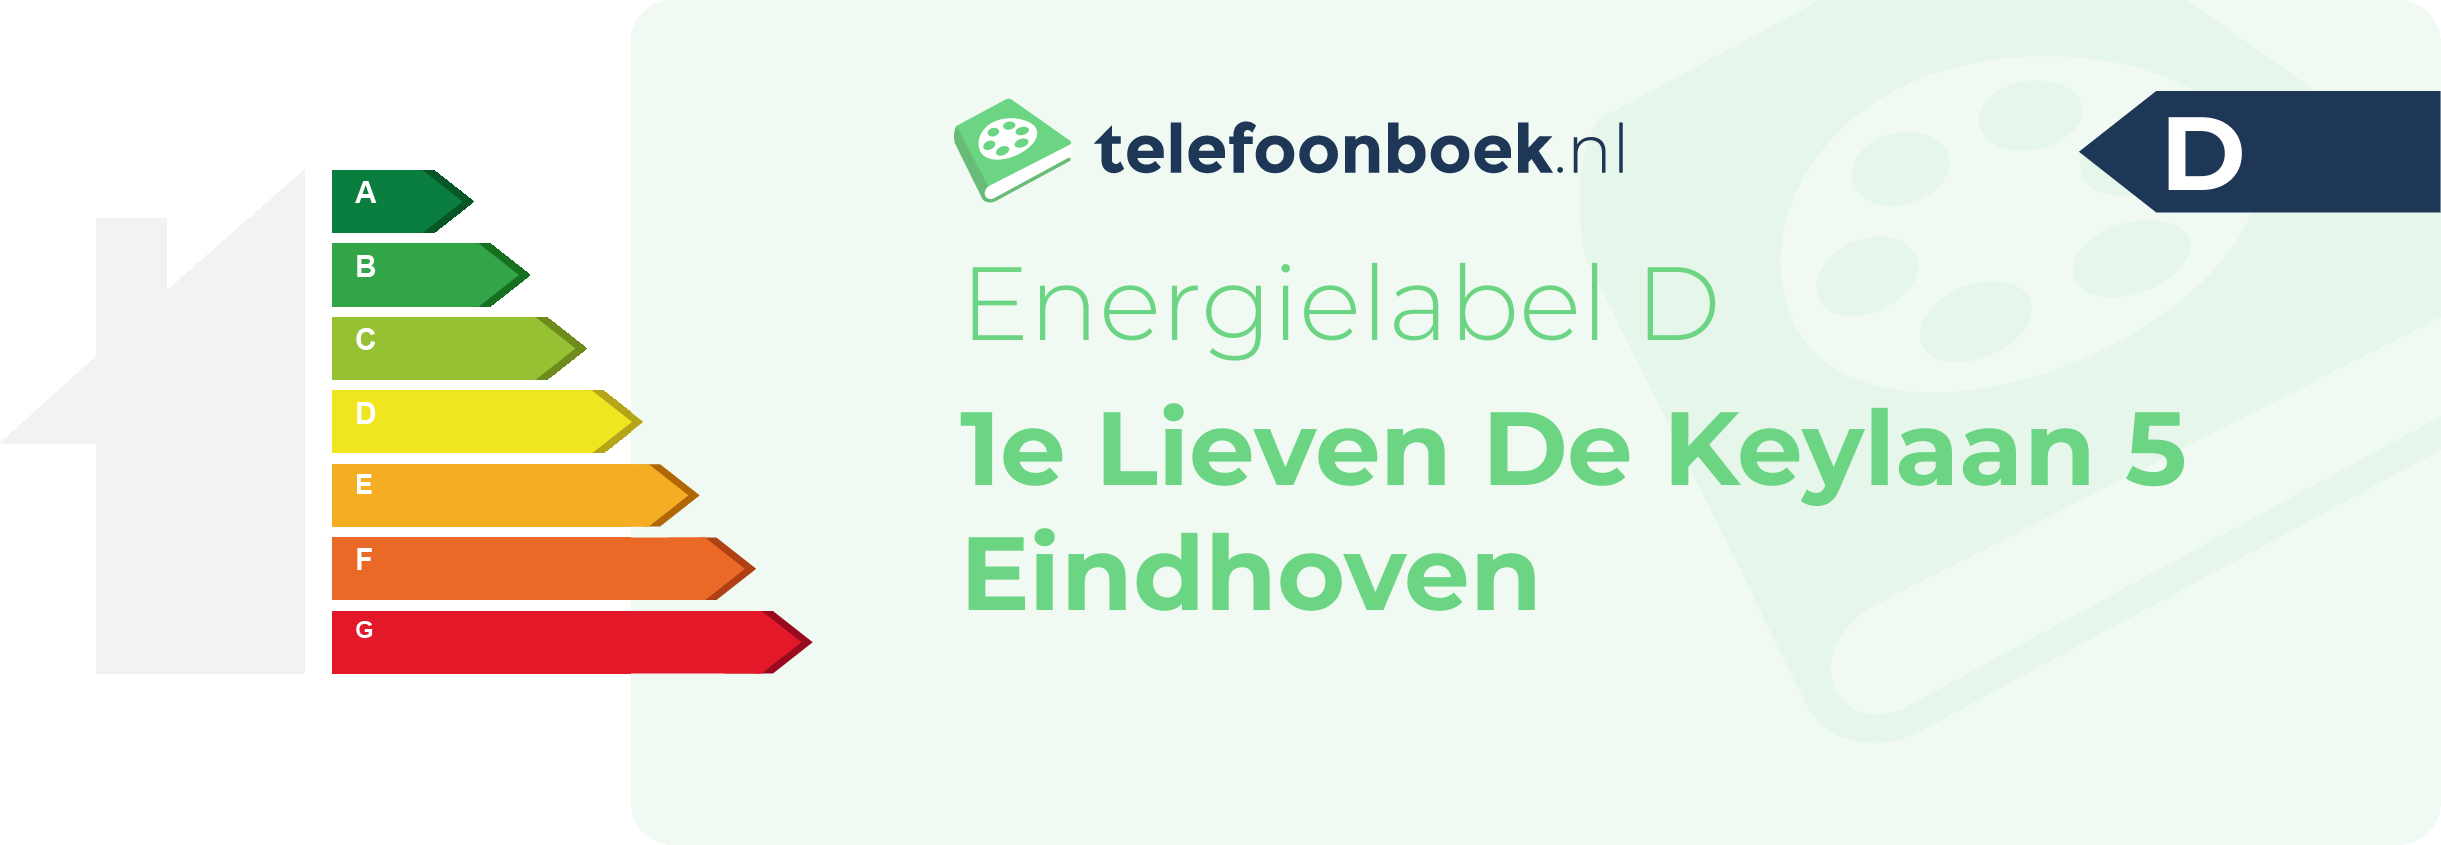 Energielabel 1e Lieven De Keylaan 5 Eindhoven